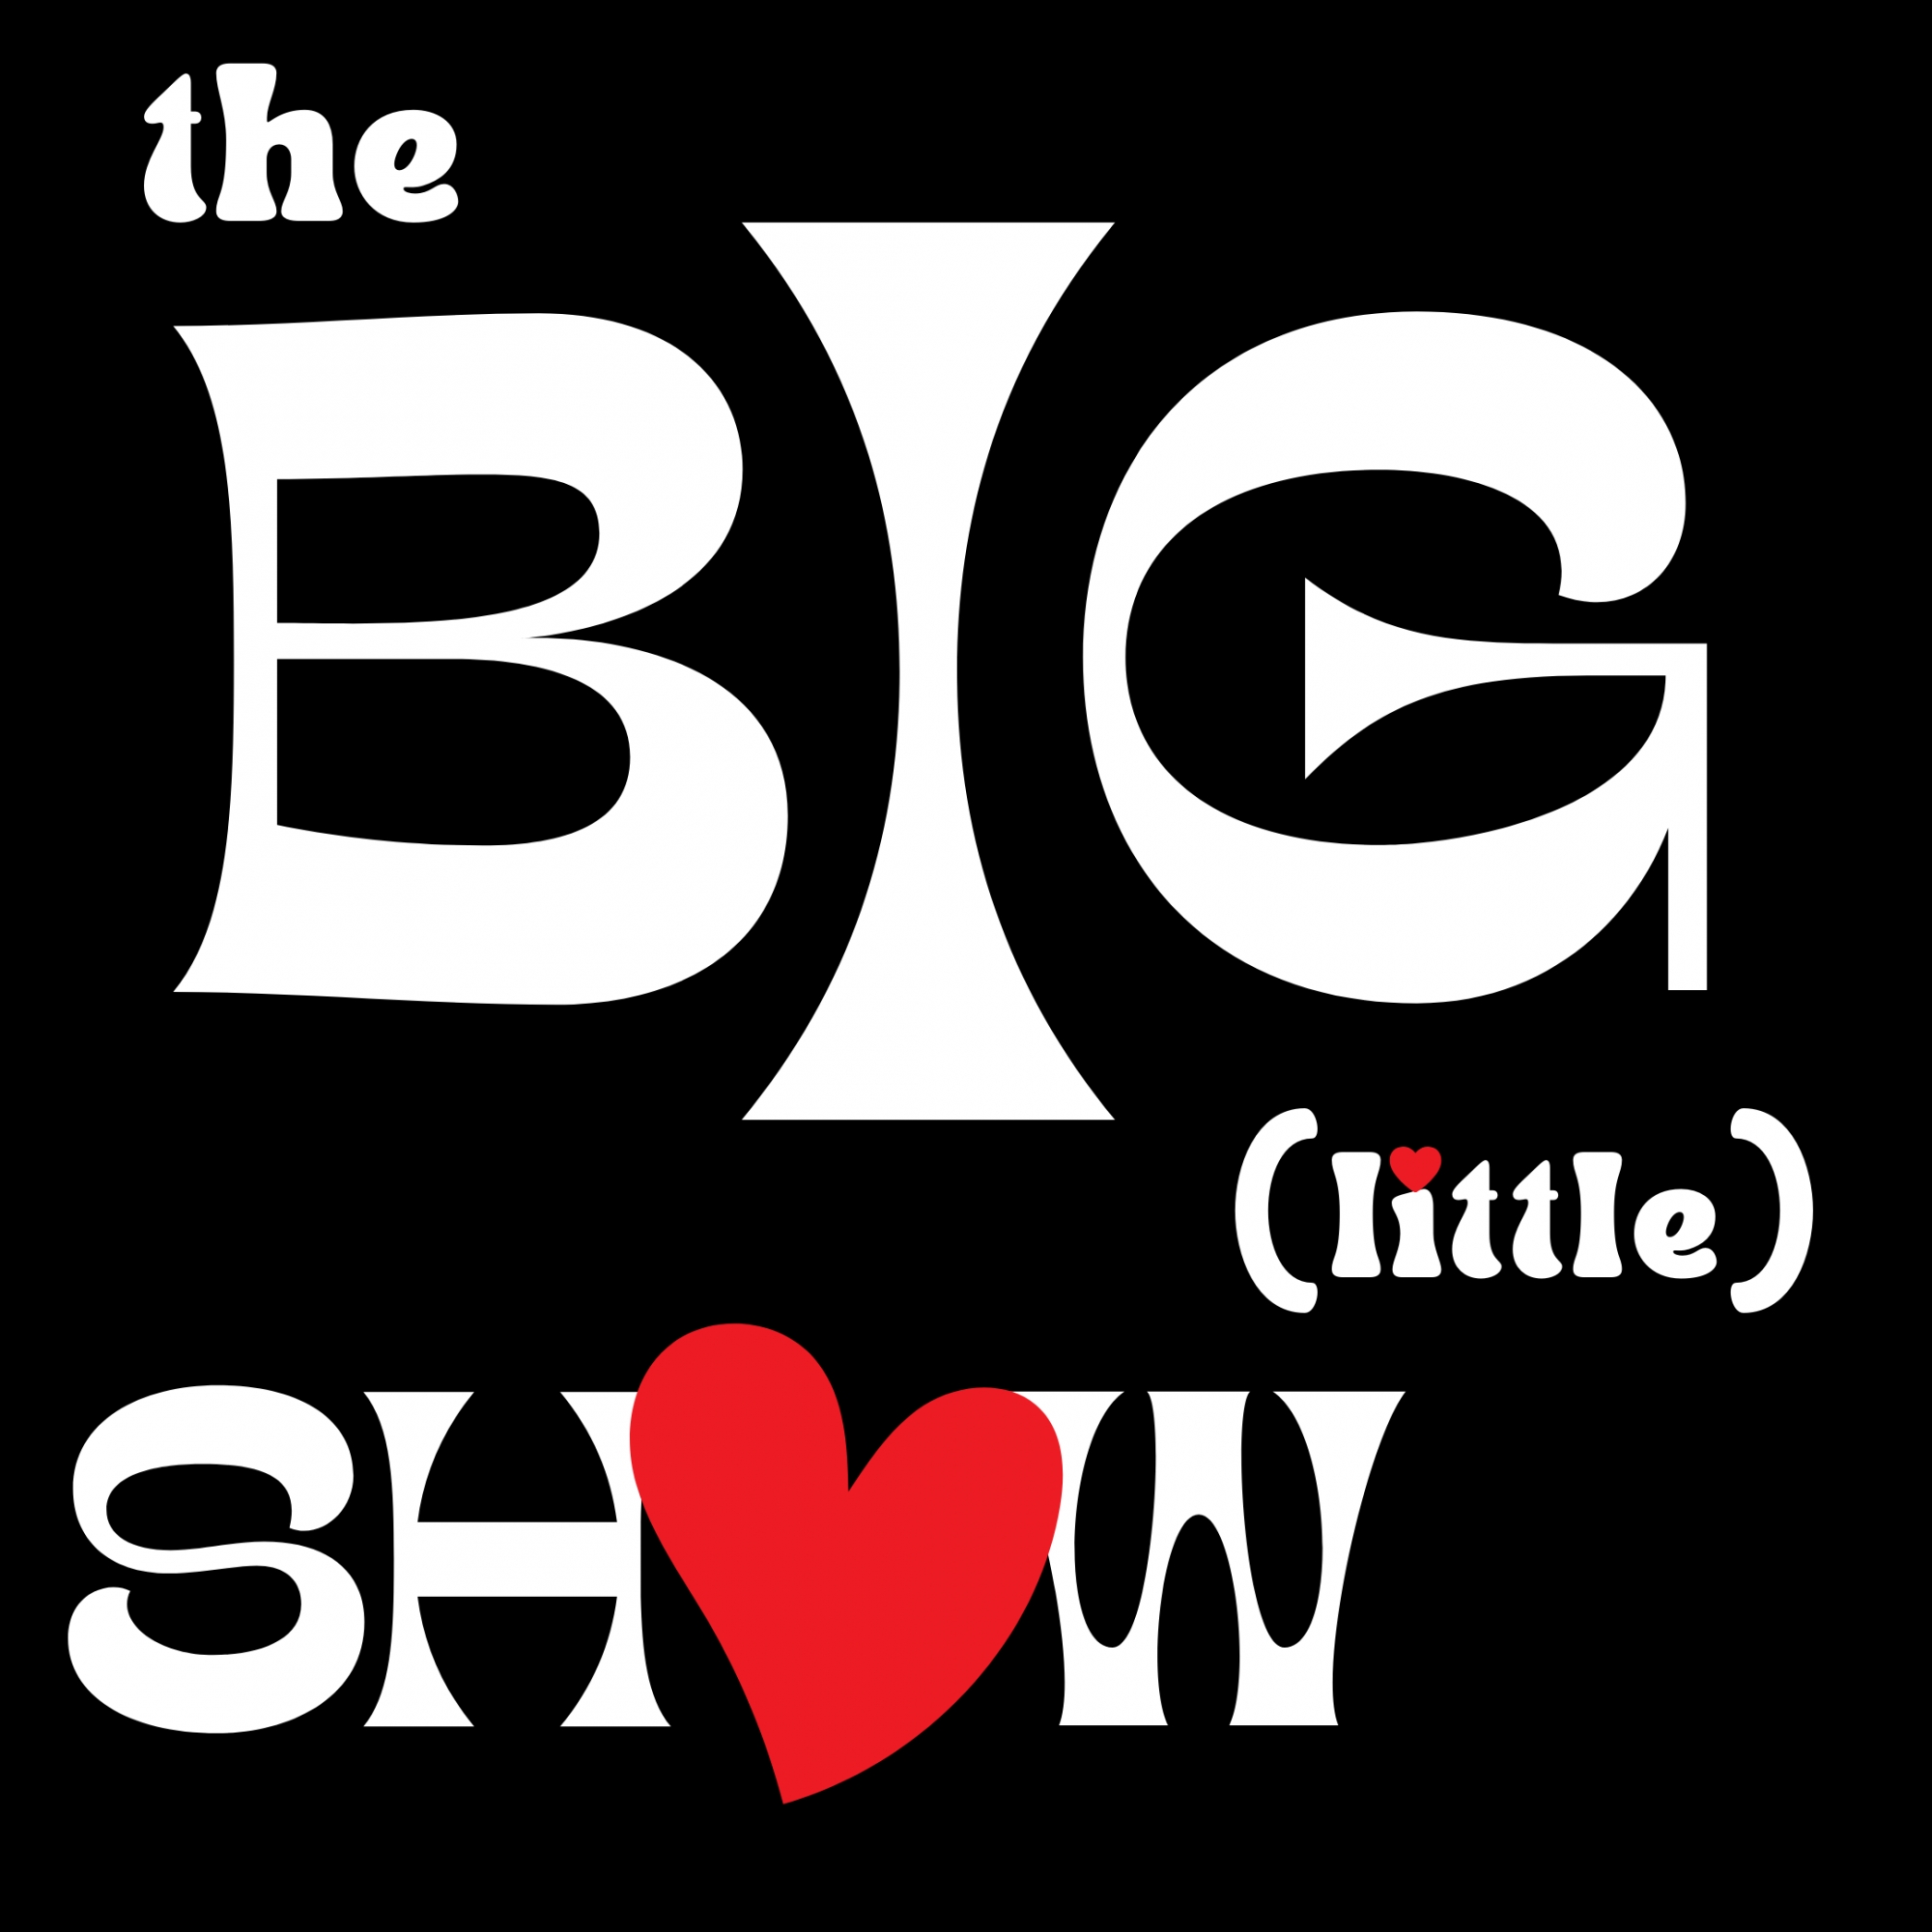 Dec '22 The Big (little) Show - Show 8